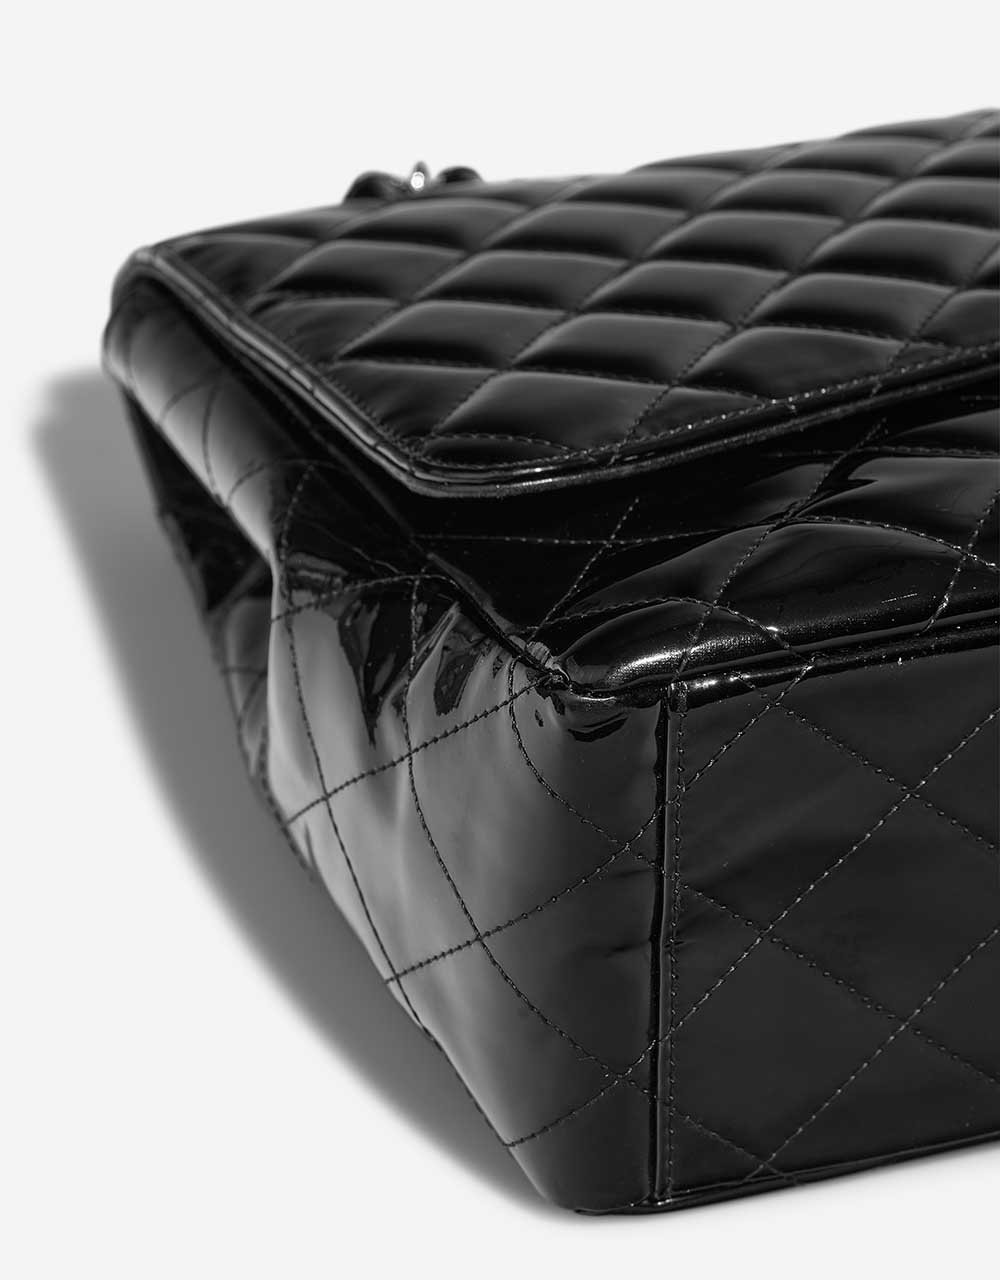 Chanel Timeless Maxi Schwarz Gebrauchsspuren 3 | Verkaufen Sie Ihre Designertasche auf Saclab.com